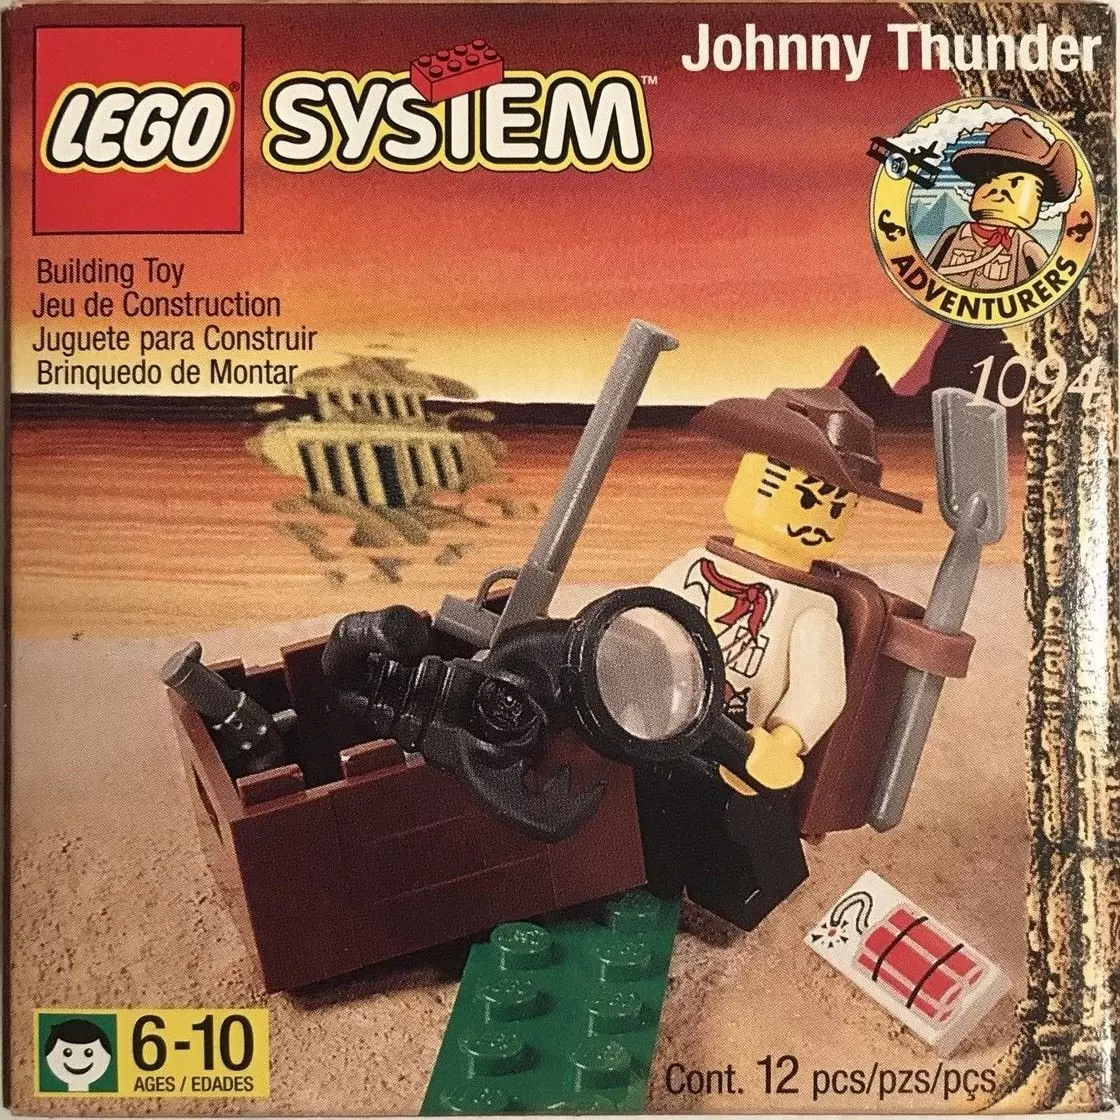 LEGO System - Johnny Thunder